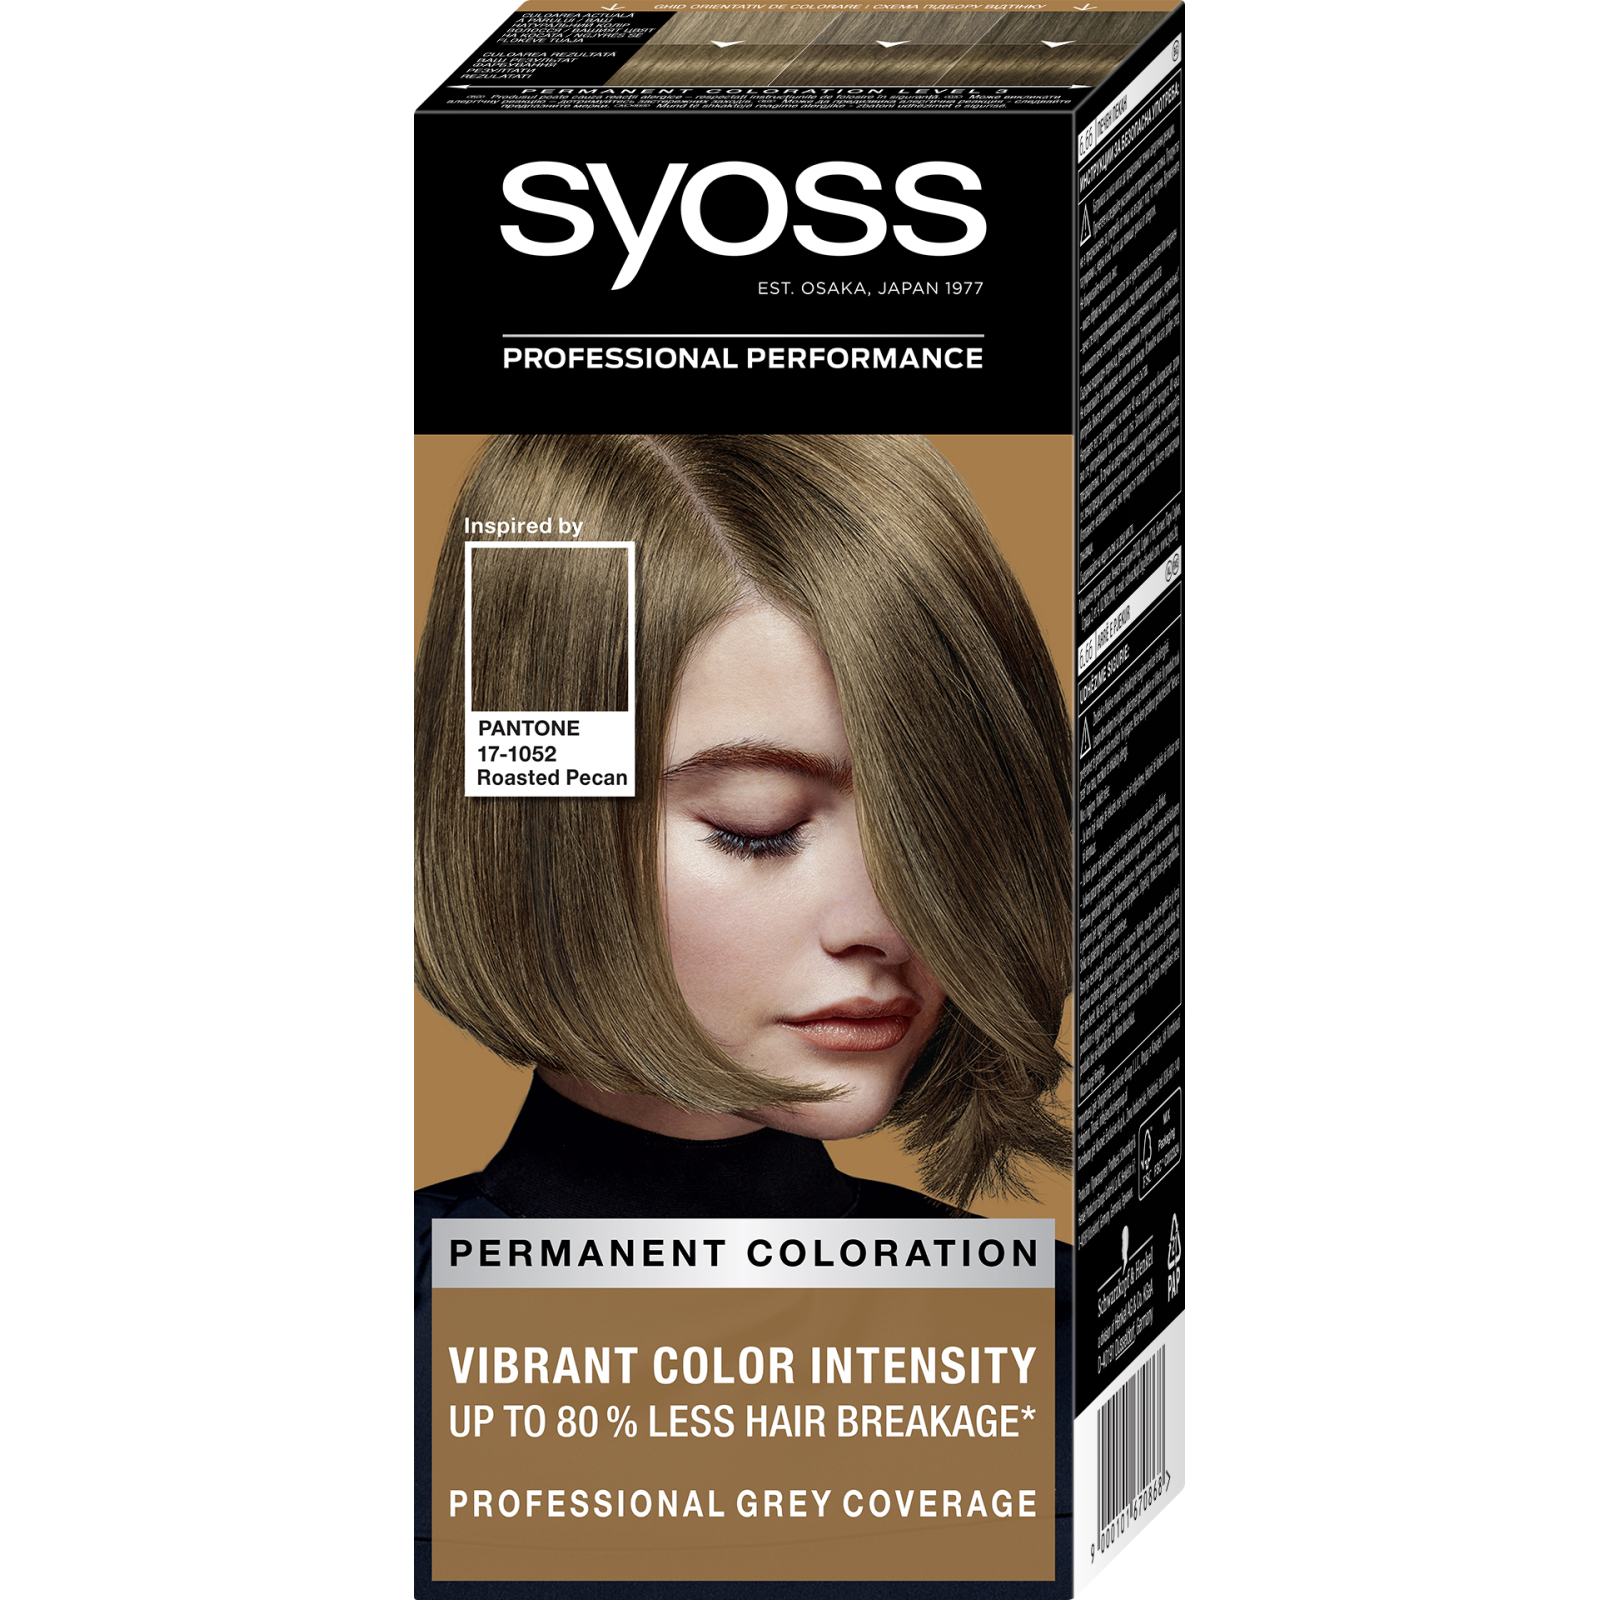 Фарба для волосся Syoss 10-55 Ультраплатиновий Блонд 115 мл (9000101210453)